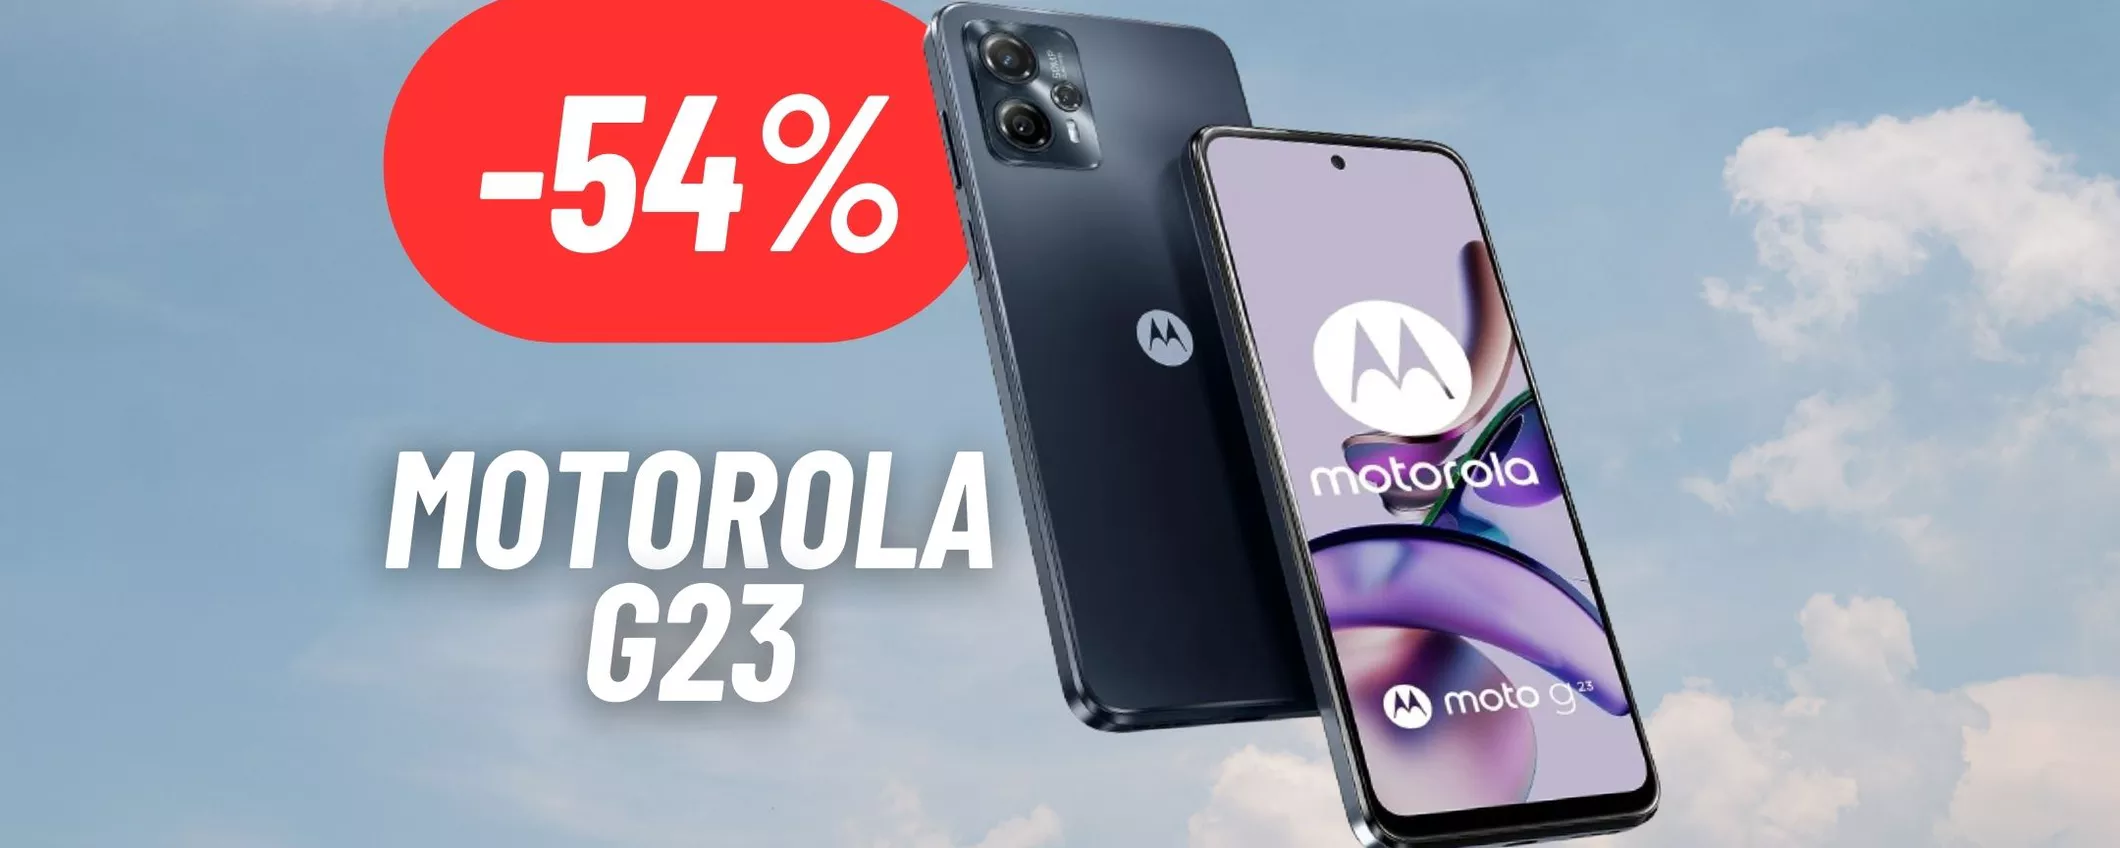 Motorola G23: SCONTO OUTLET del 54% attivo, smartphone top a prezzo bassissimo